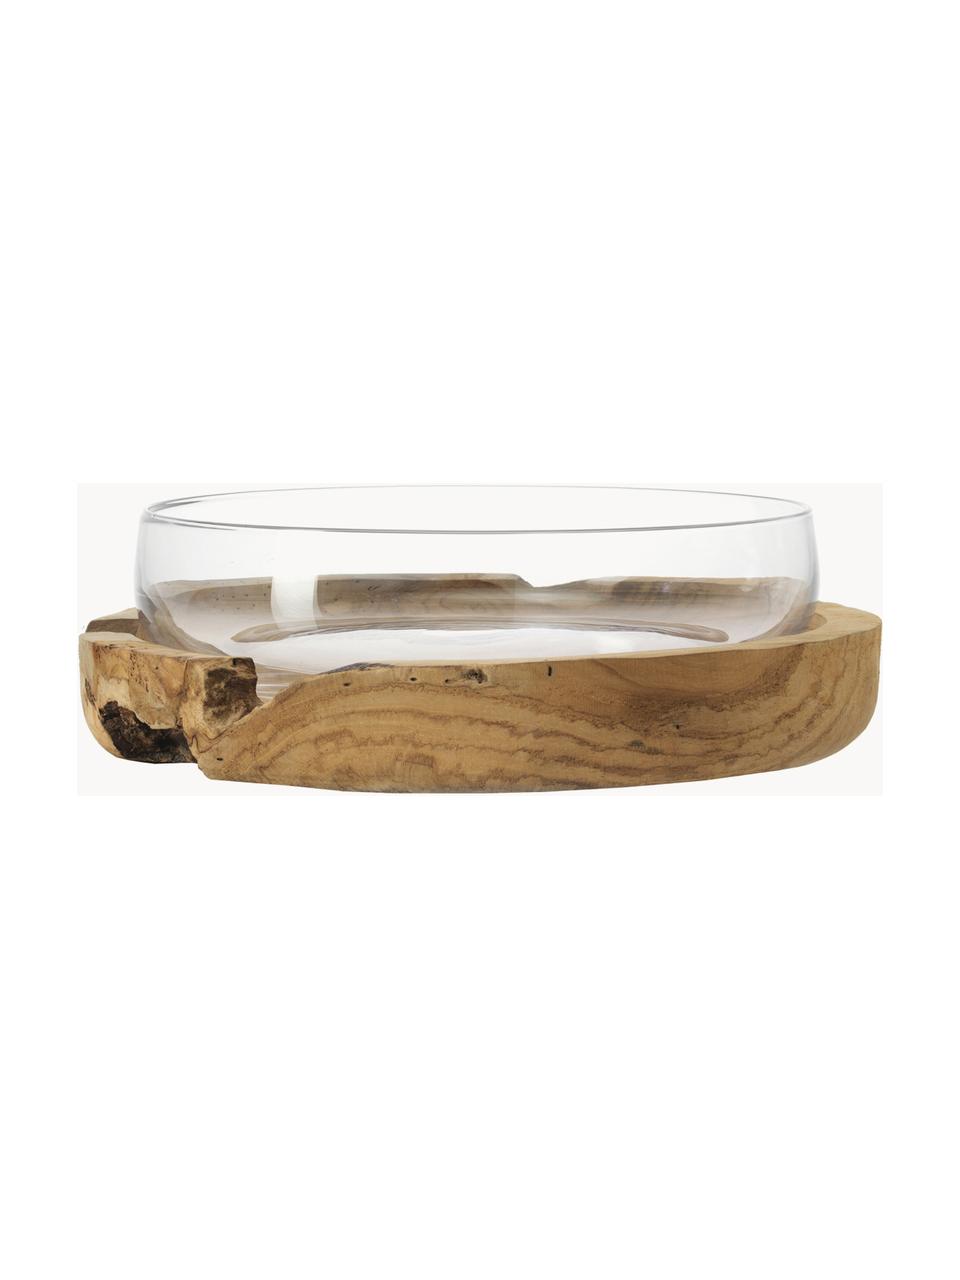 Velká ručně vyrobená dekorativní miska s teakovou podstavou Terra, Teakové dřevo, transparentní, Ø 28 cm, V 11 cm